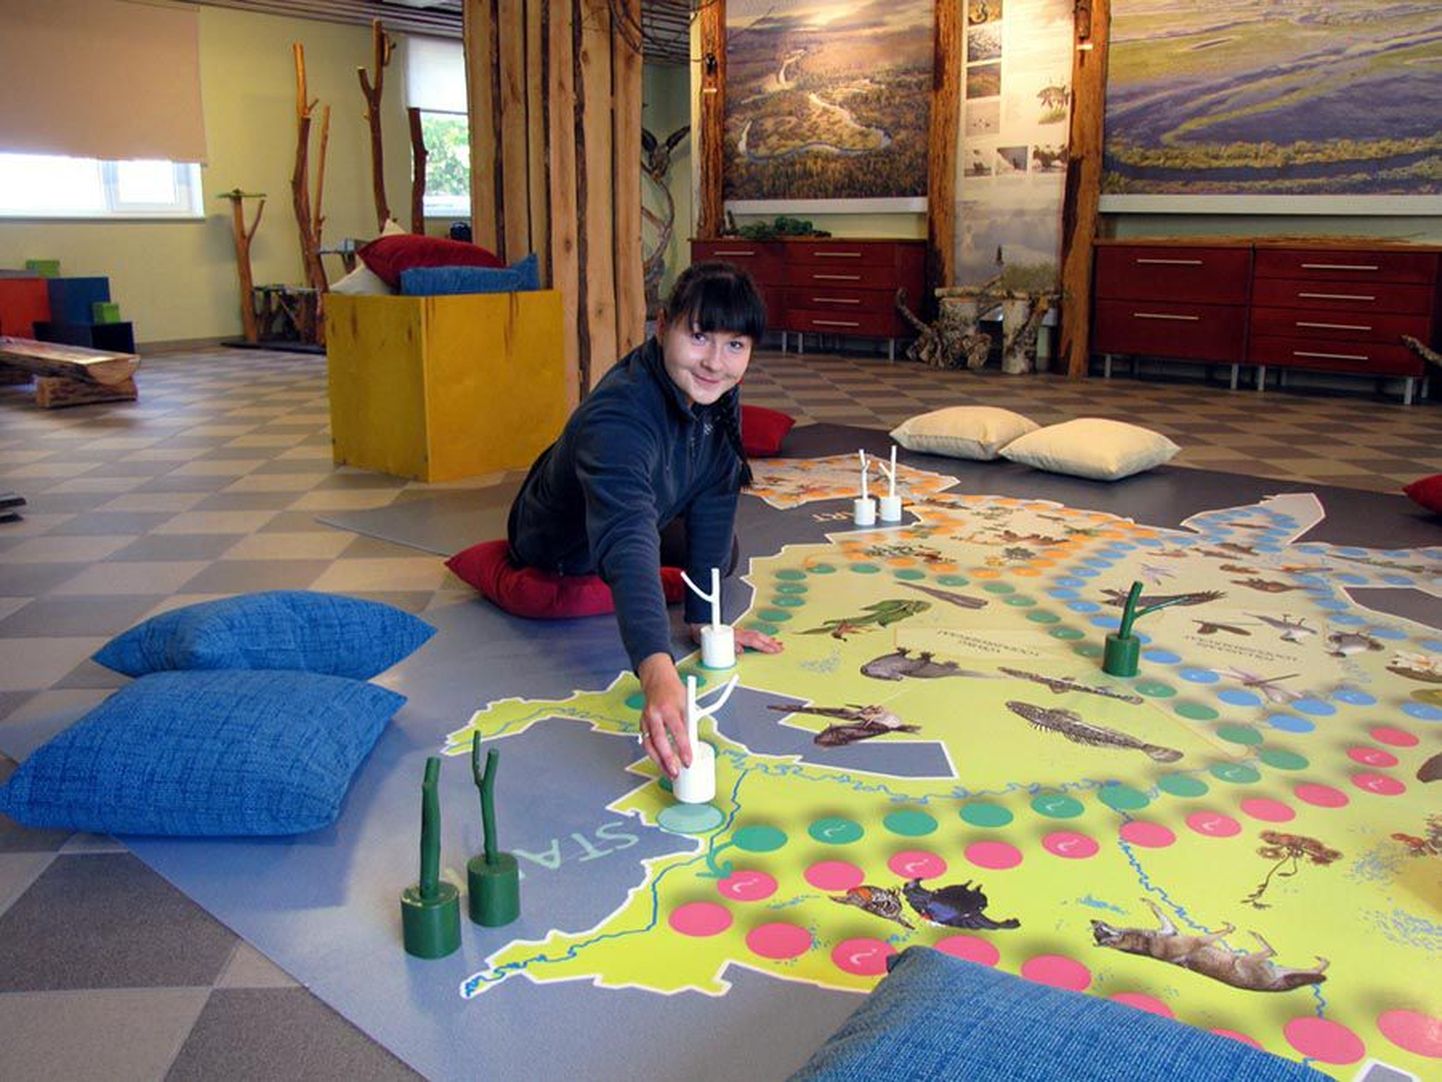 Keskkonnahariduse spetsialisti Riin Vare (pildil) väljamõeldud põrandamäng kujutab endast maha laotatud Alam-Pedja kaarti, kus lapsed saavad teha nuppudega reisi ümber looduskaitseala.